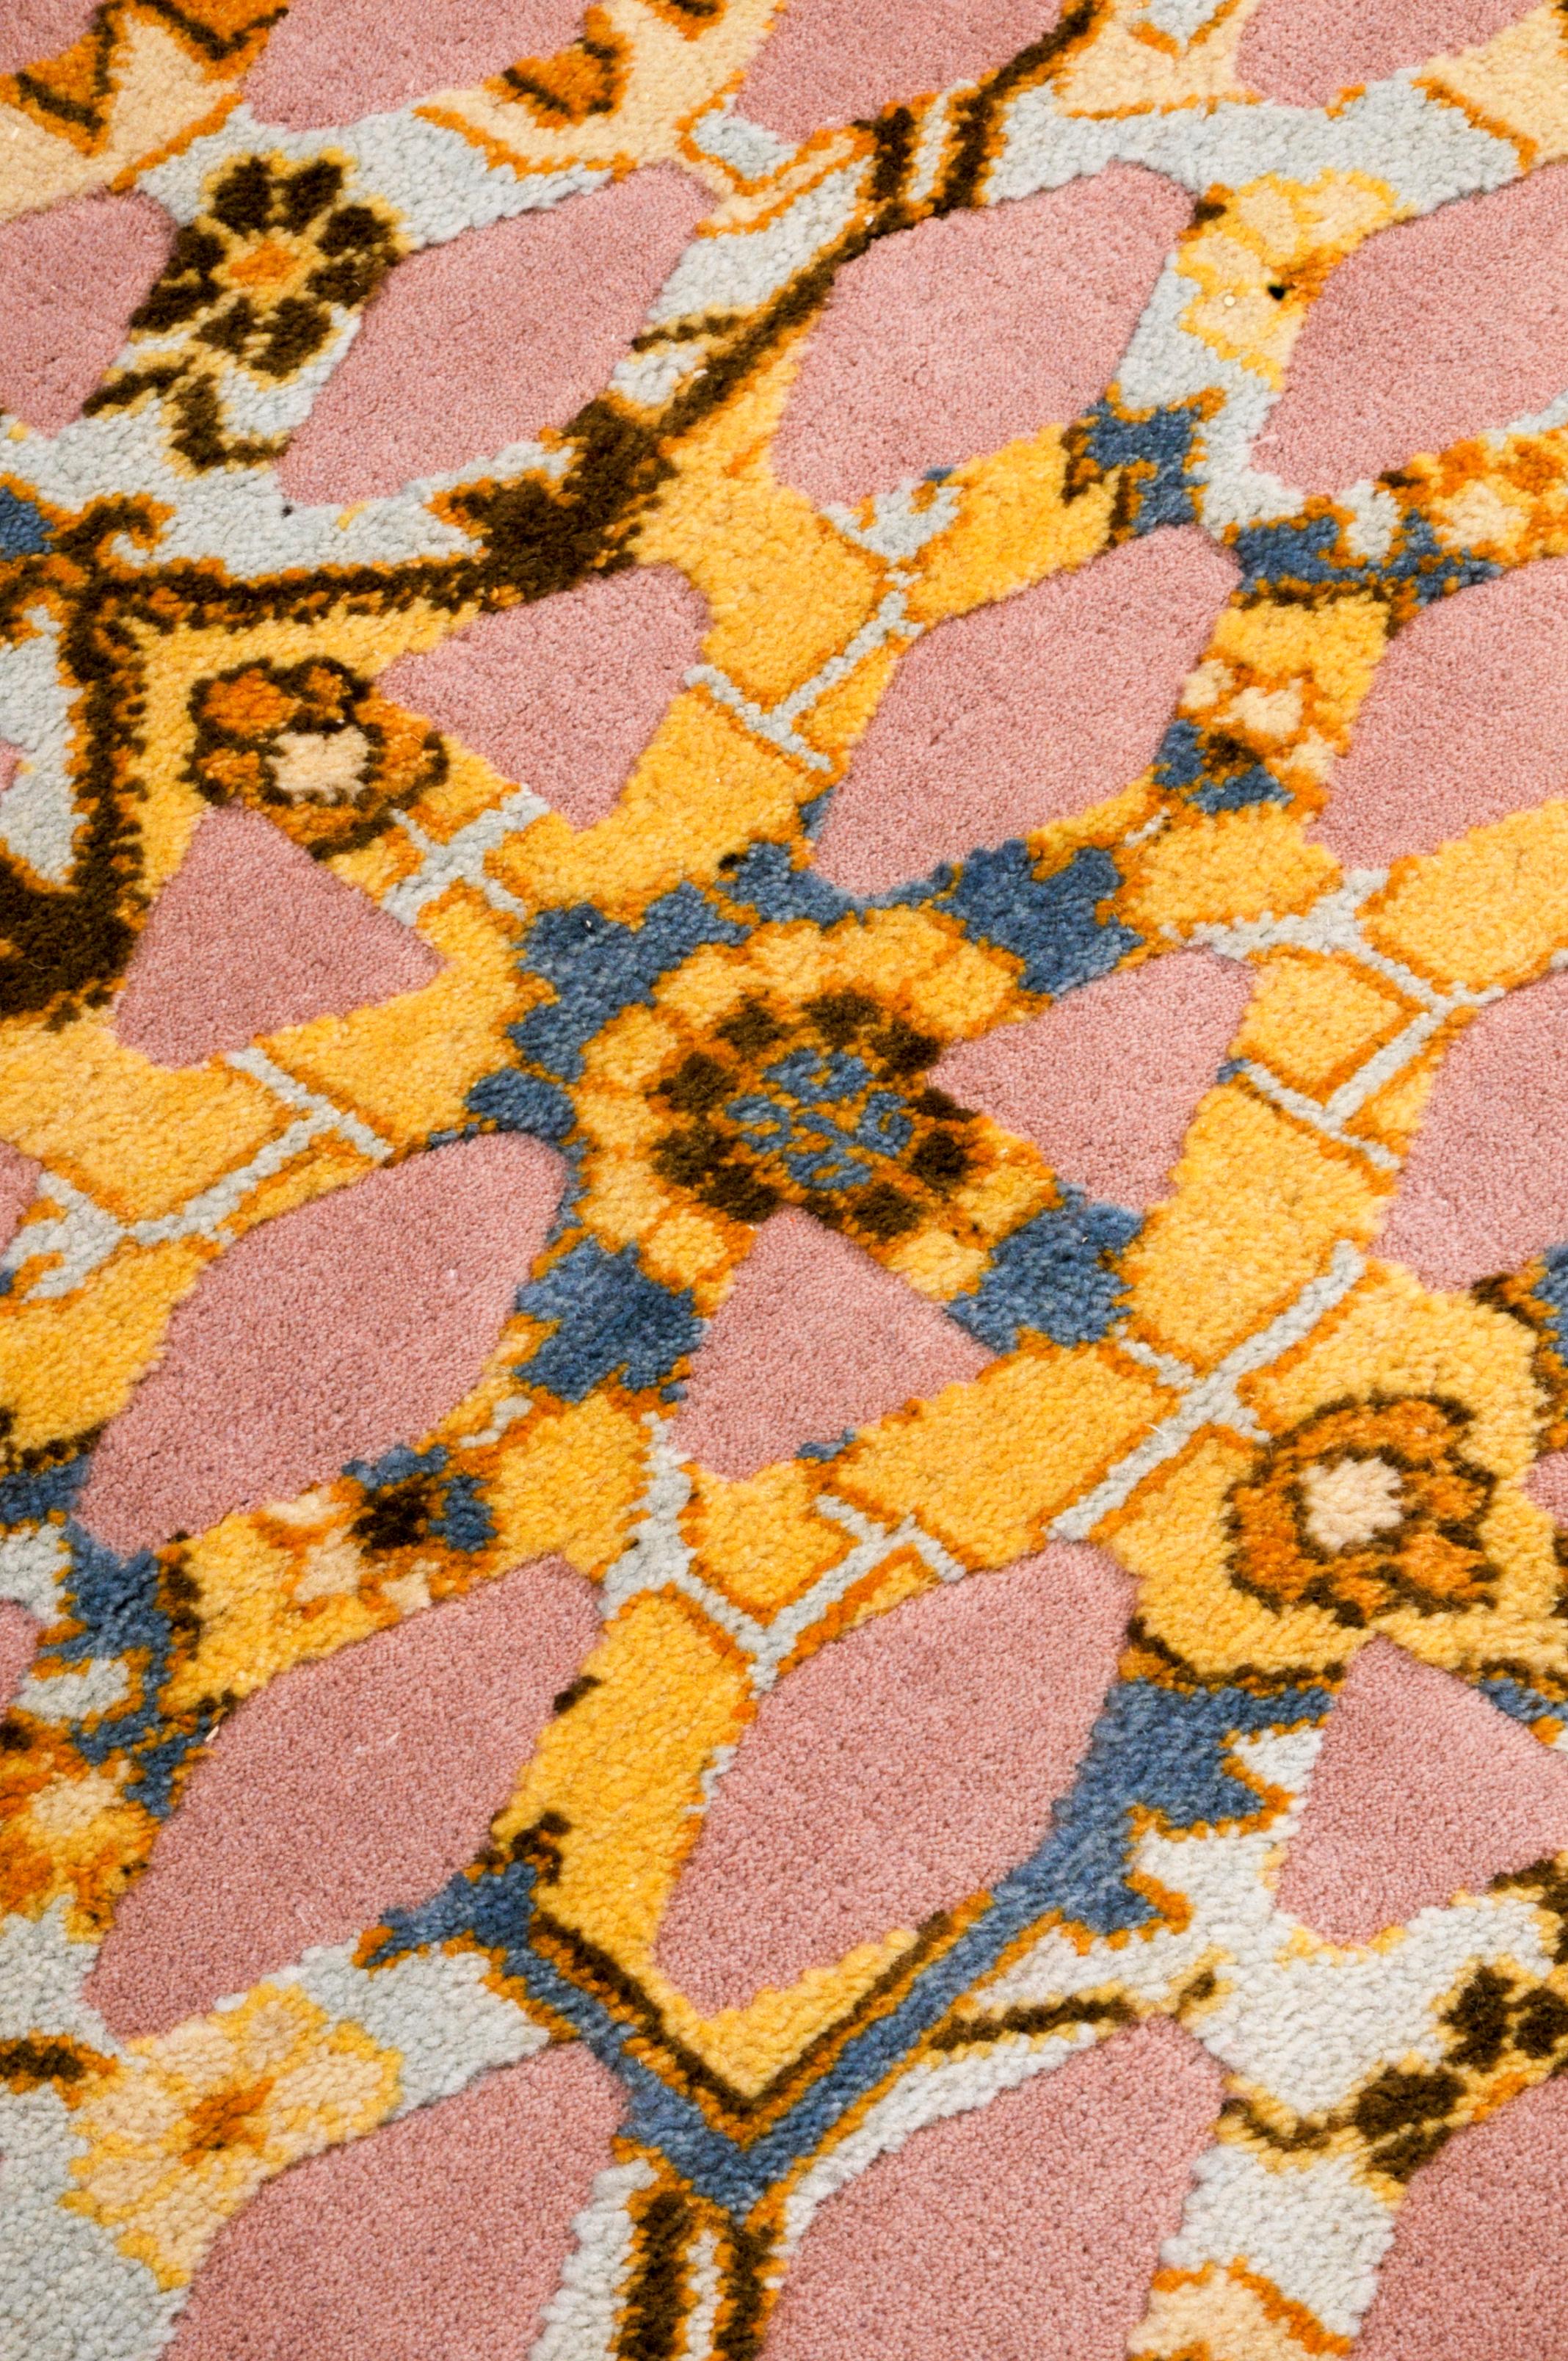 Mash-Up III - Yellow Paolo Giordano Modern Design Rug Carpet Wool Handknotted (tapis de laine noué à la main)

Il s'agit de la superposition d'un graphisme familier - utilisé dans des applications industrielles telles que les tôles et les panneaux